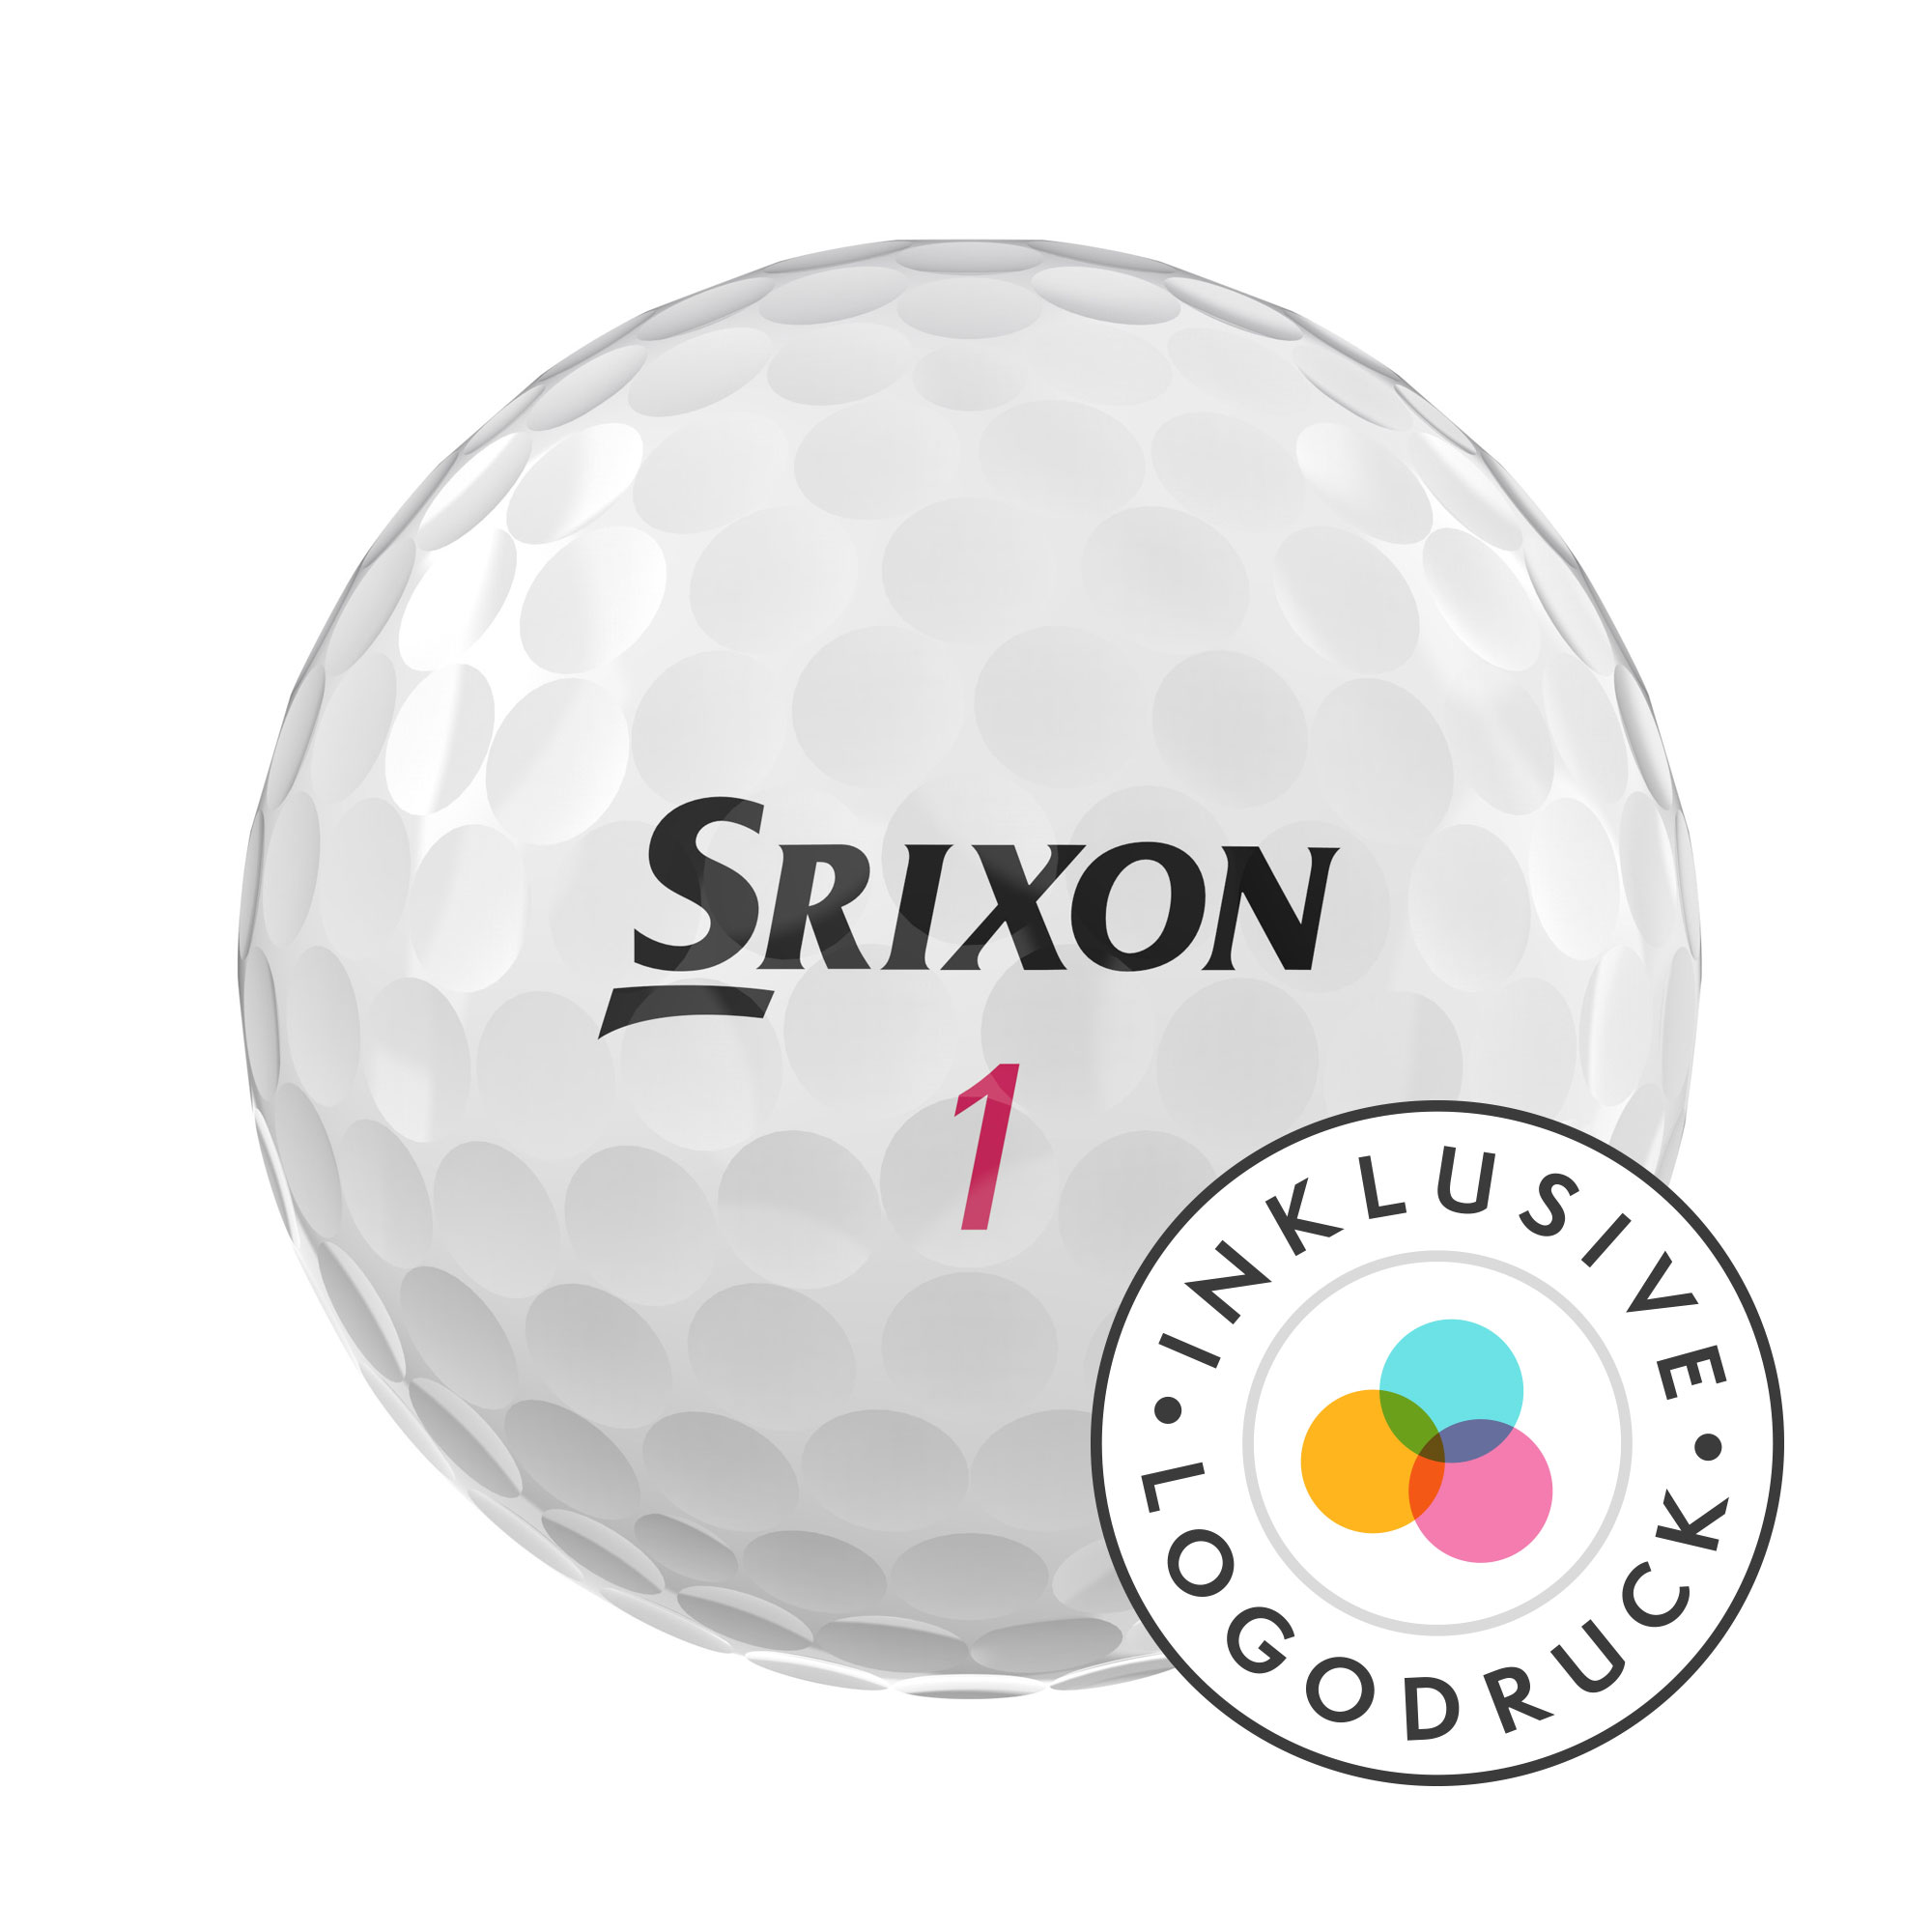 Srixon Soft Feel Lady Golfbälle bedruckt, weiss (VPE à 12 Bälle)